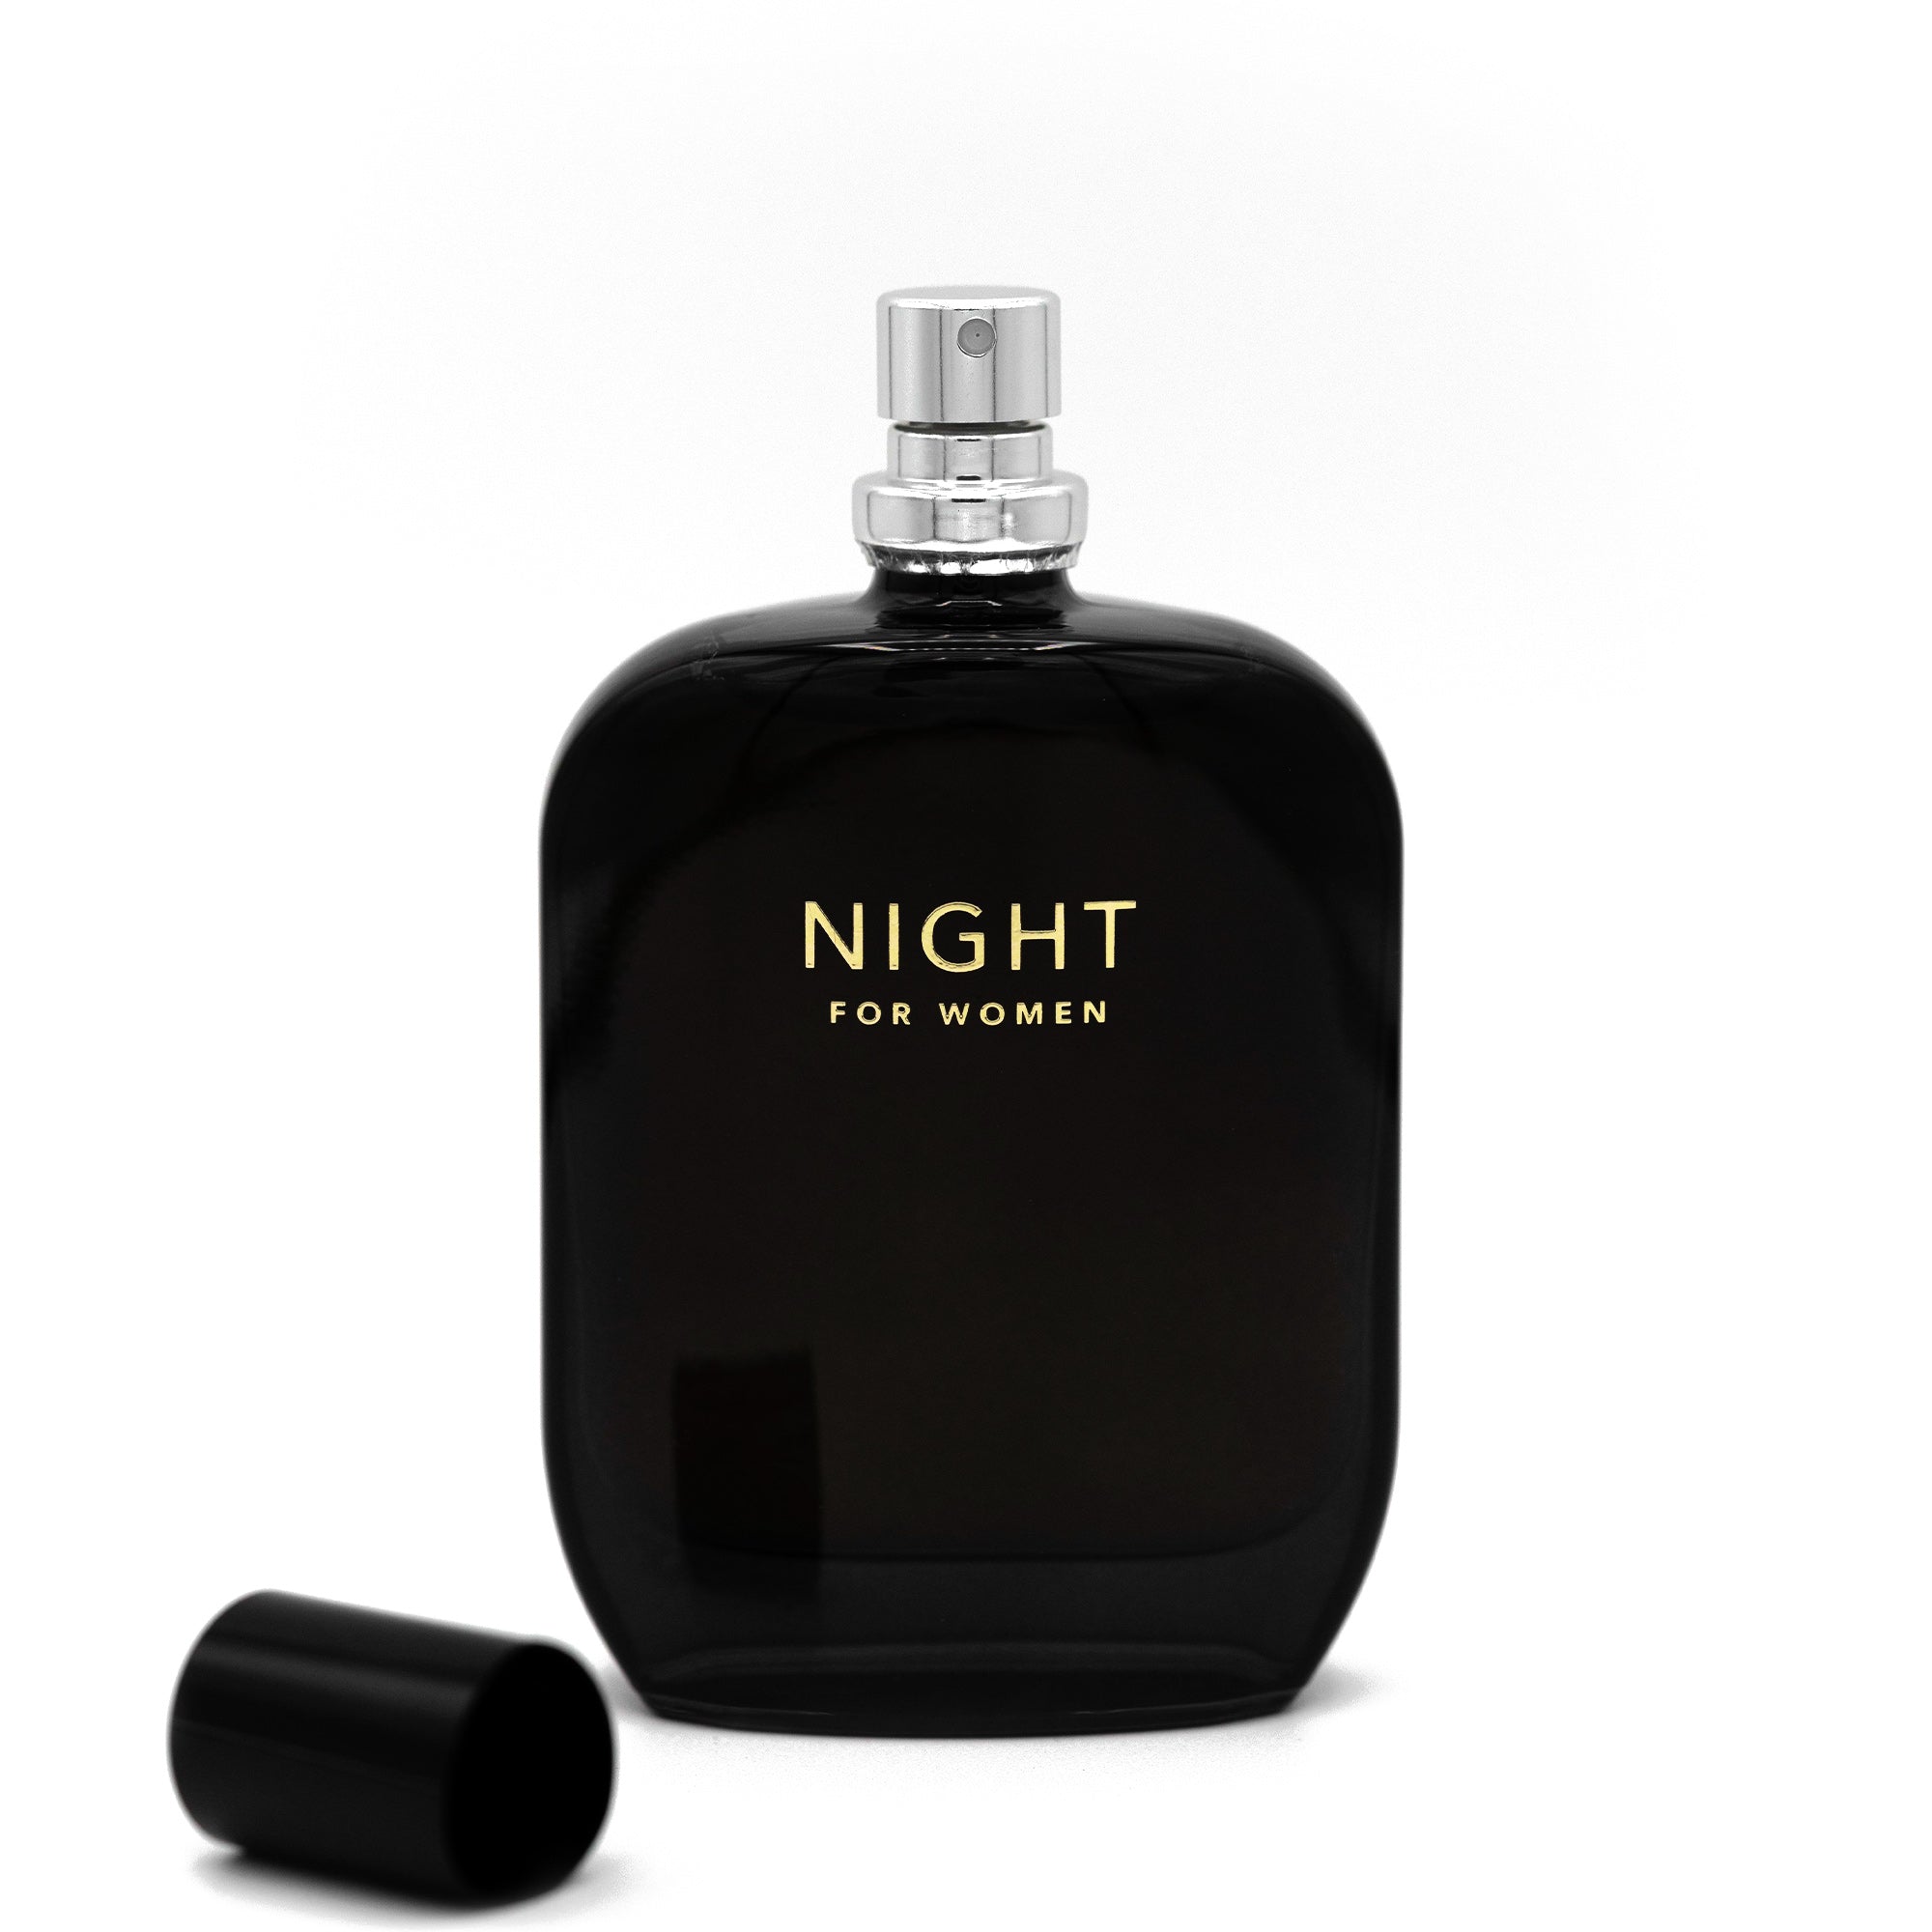 NIGHT for Women fragrance bottle 50ml open cap